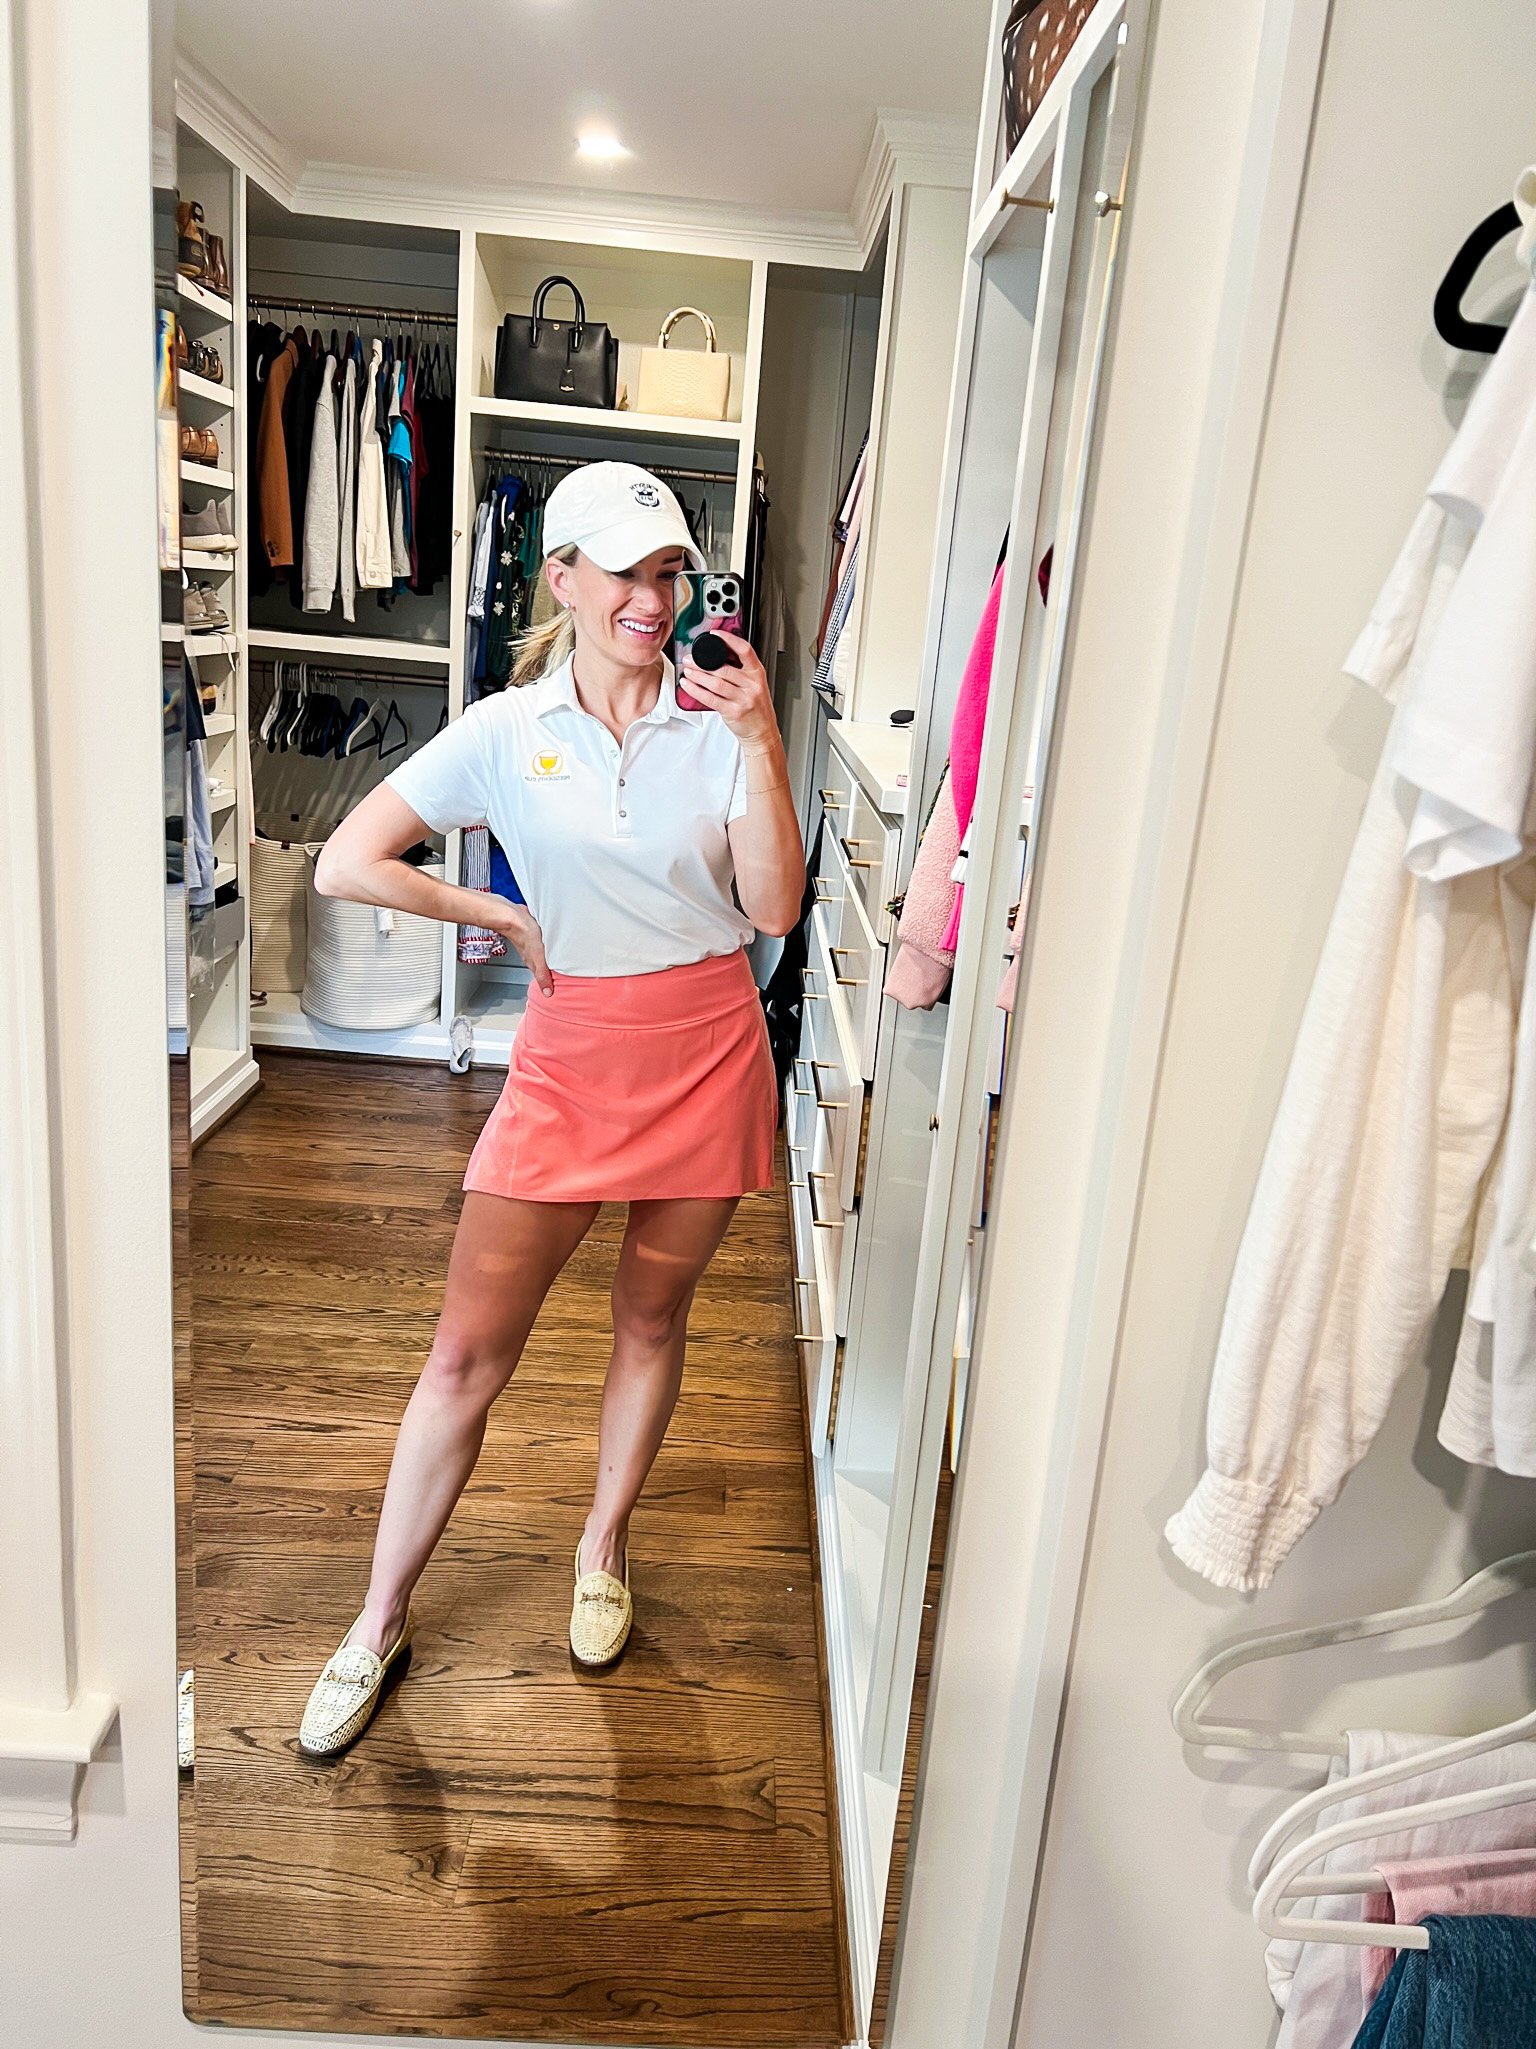 Spring Autumn Golf Clothes Women Long Sleeve Shirt Sports Wear